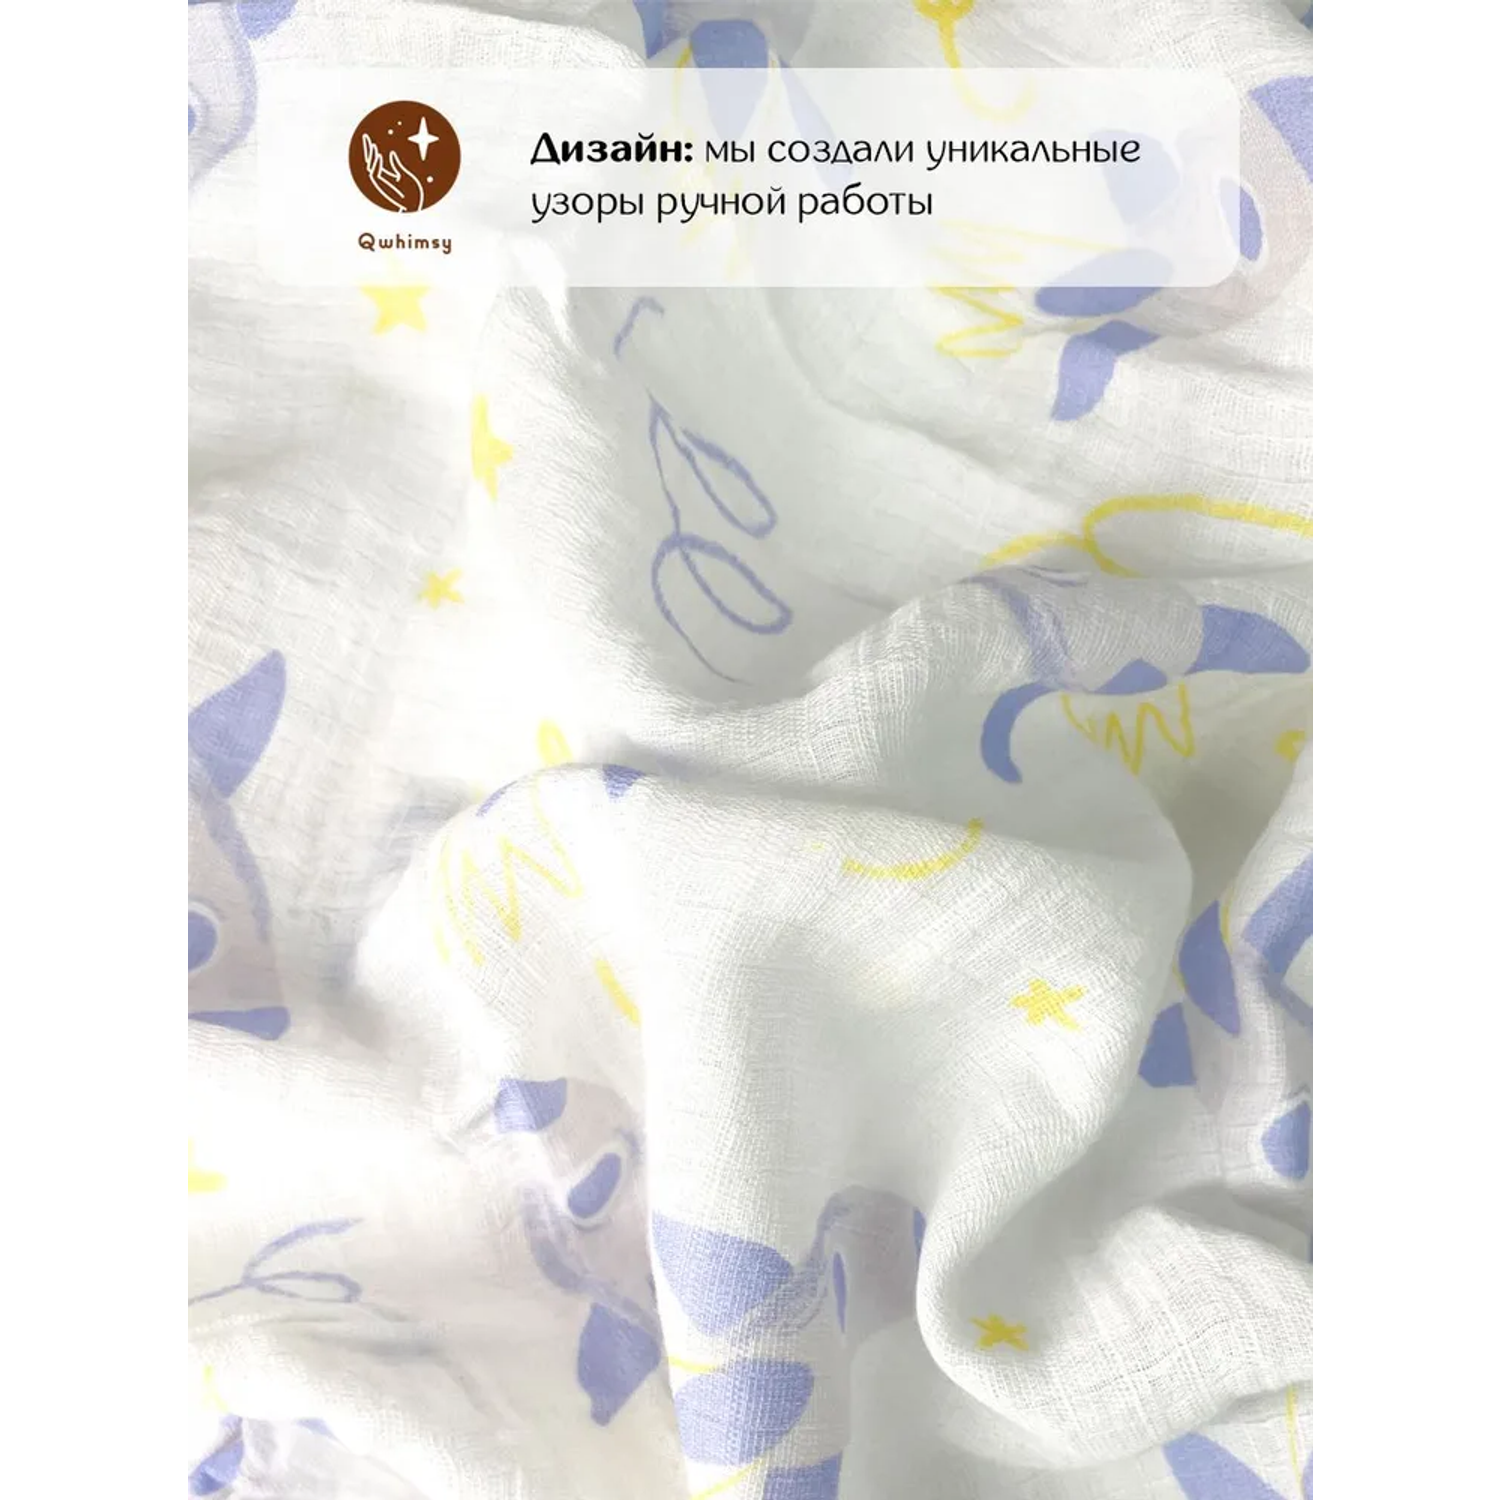 Пеленки для новорожденных Qwhimsy муслиновые 112х112 см - фото 4